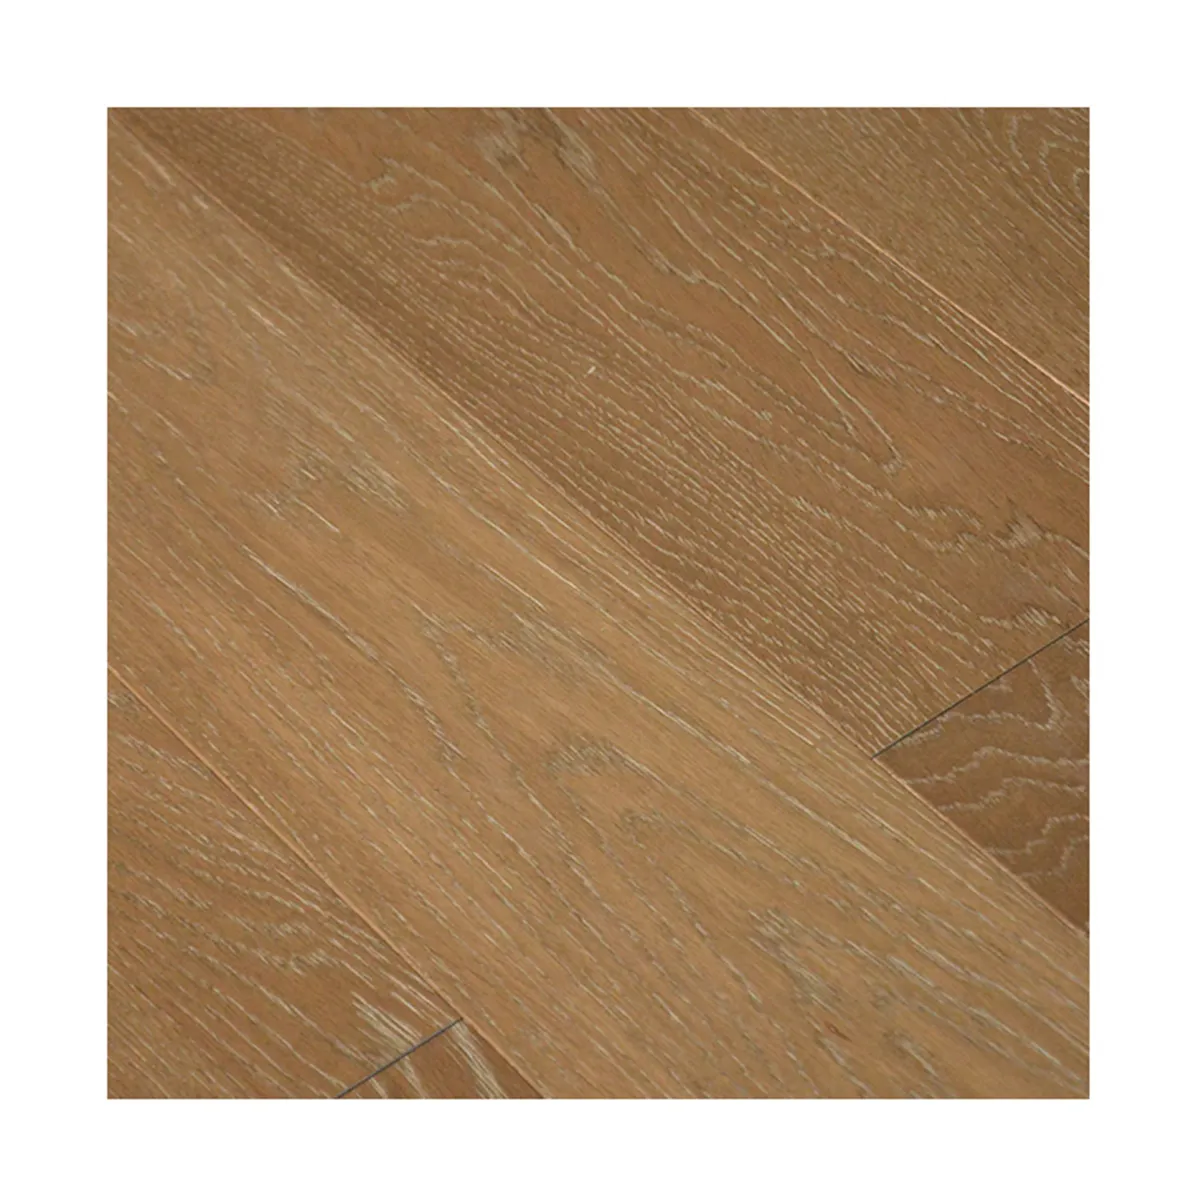 New Trend floor board wood oak engineer wood flooring 3-layer engineering timber wood flooring